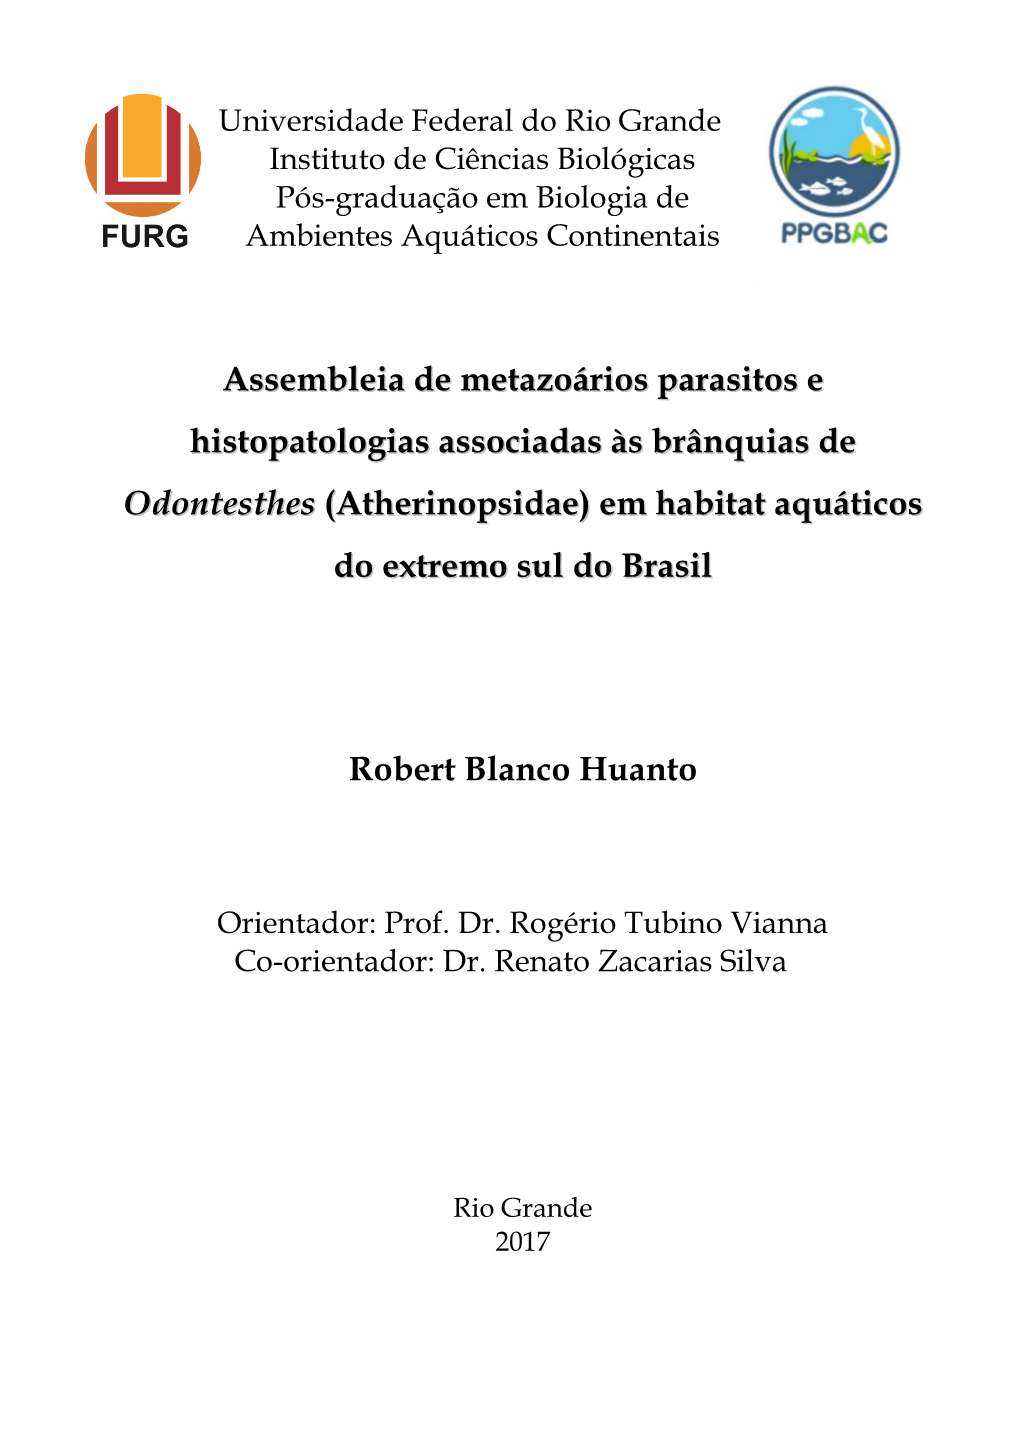 Assembleia De Metazoários Parasitos E Histopatologias Associadas Às Brânquias De Odontesthes (Atherinopsidae) Em Habitat Aquáticos Do Extremo Sul Do Brasil